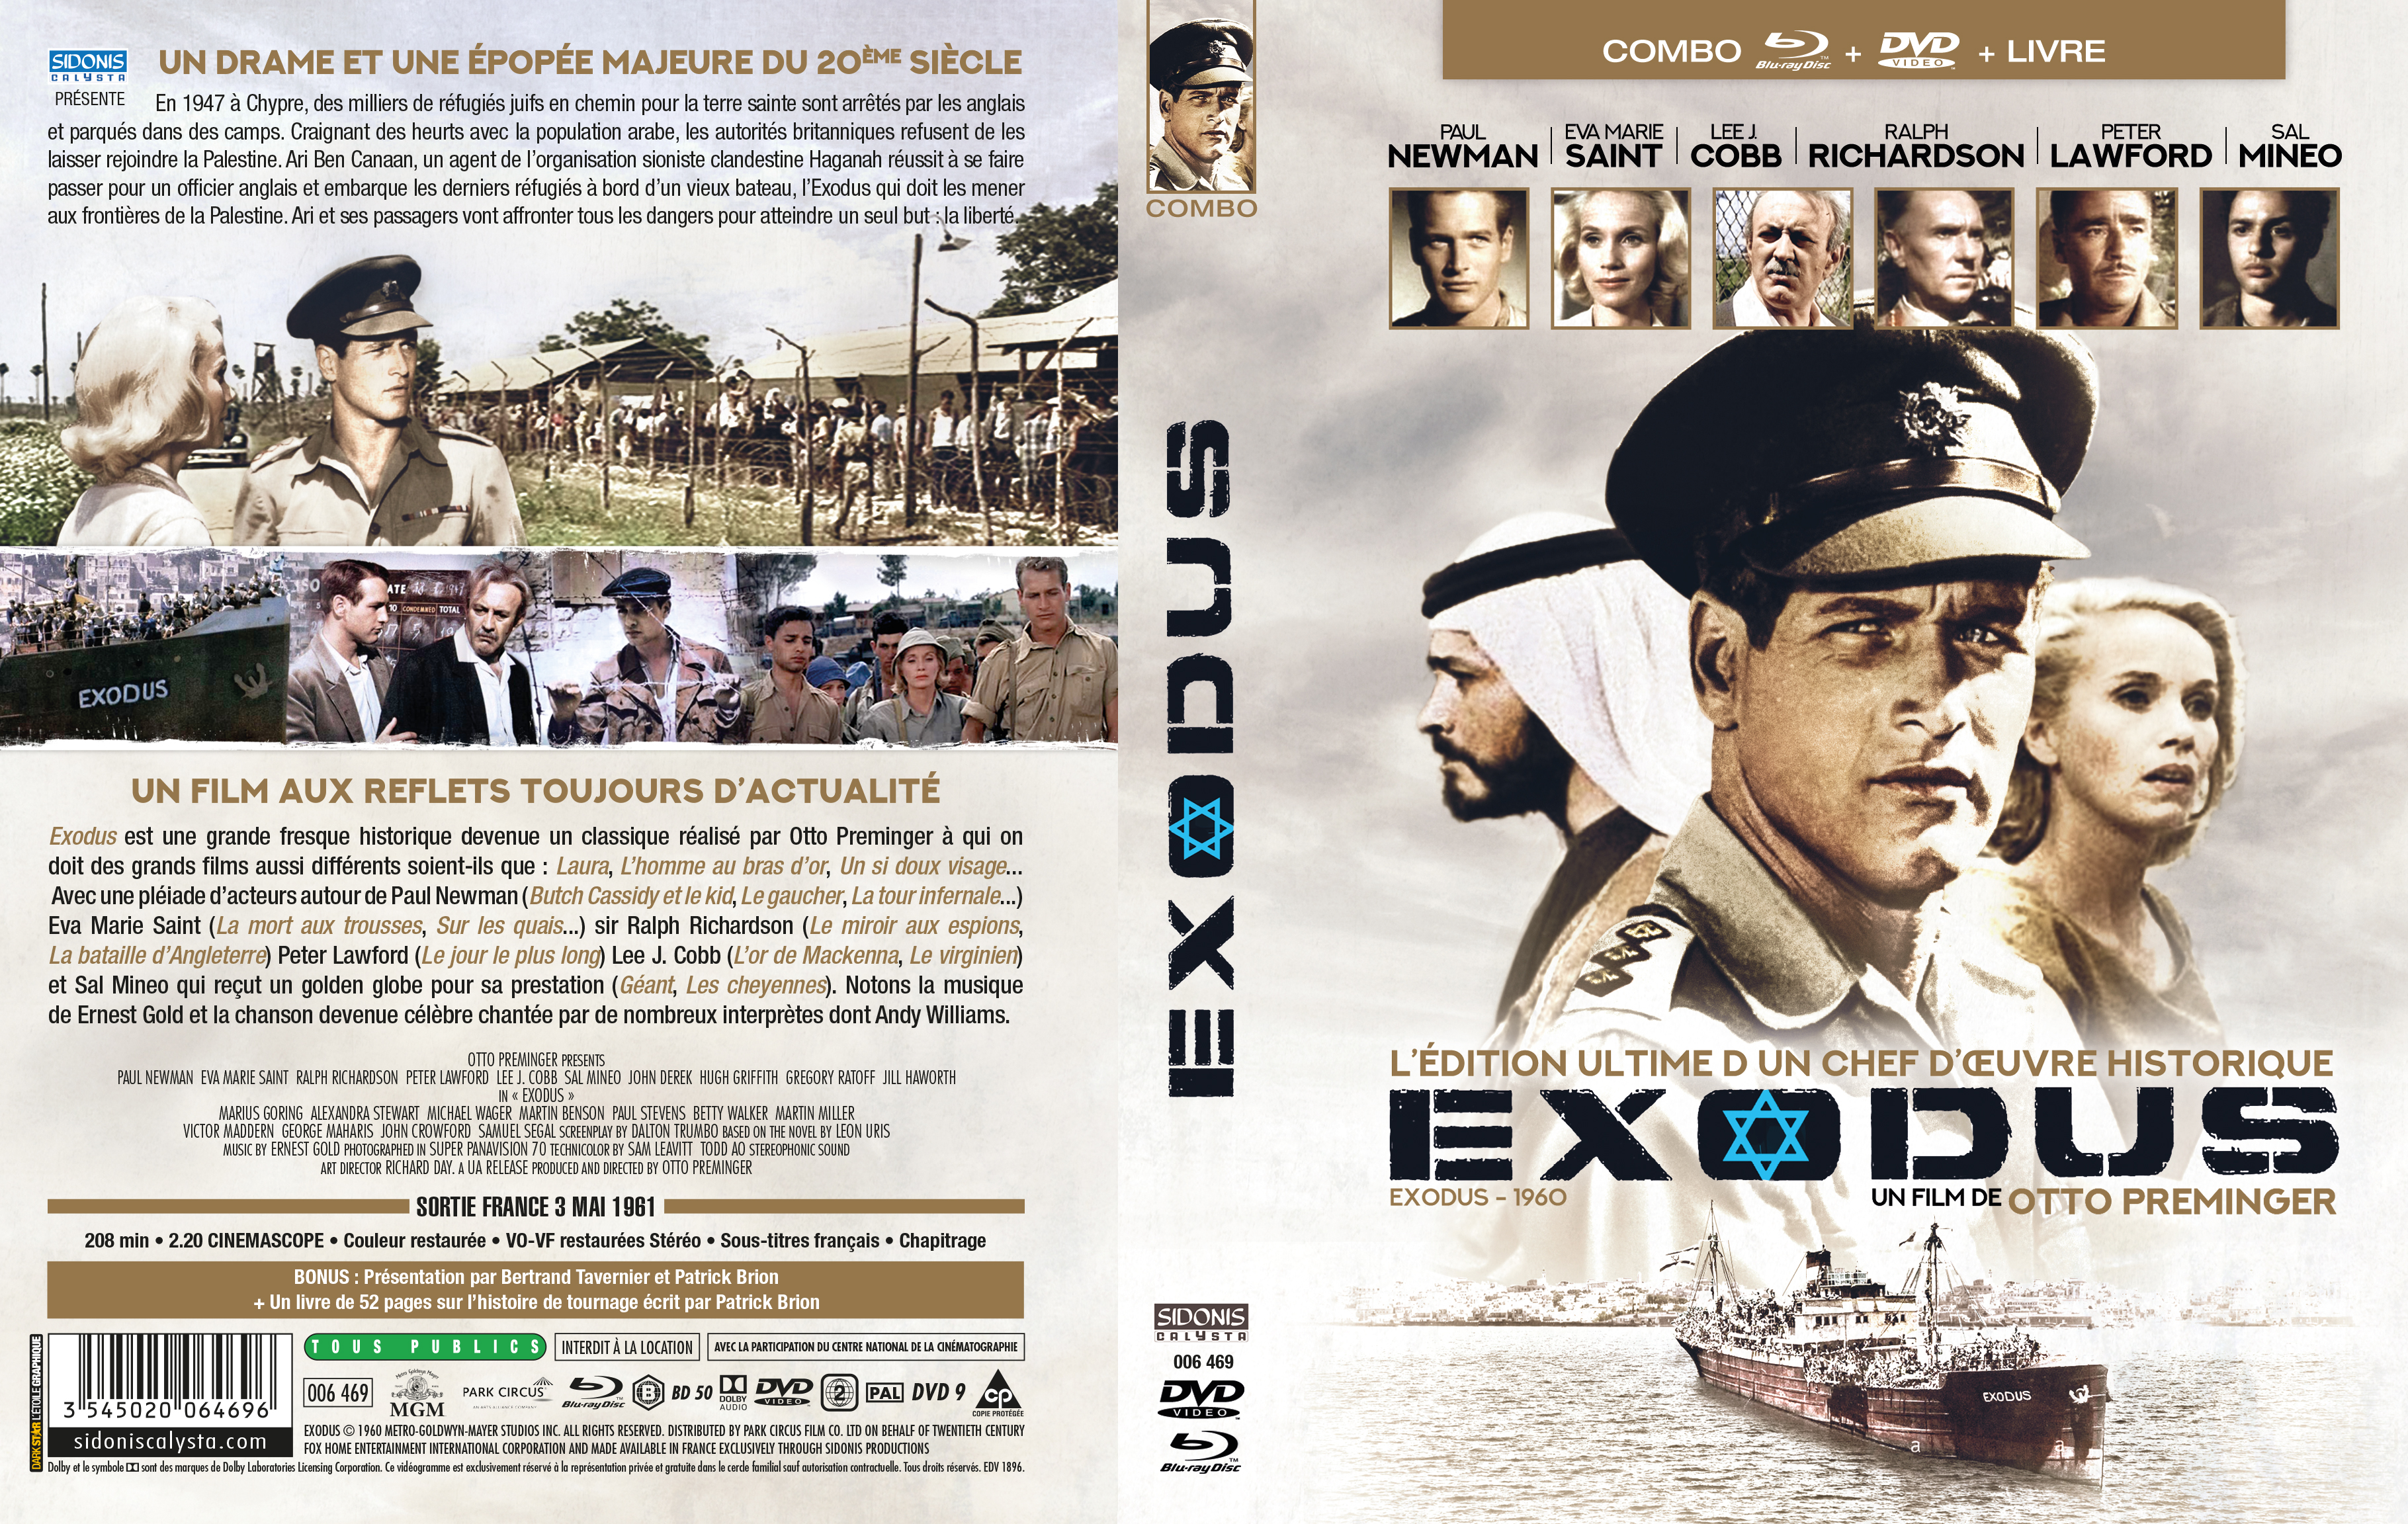 Jaquette DVD Exodus (BLU-RAY) v2